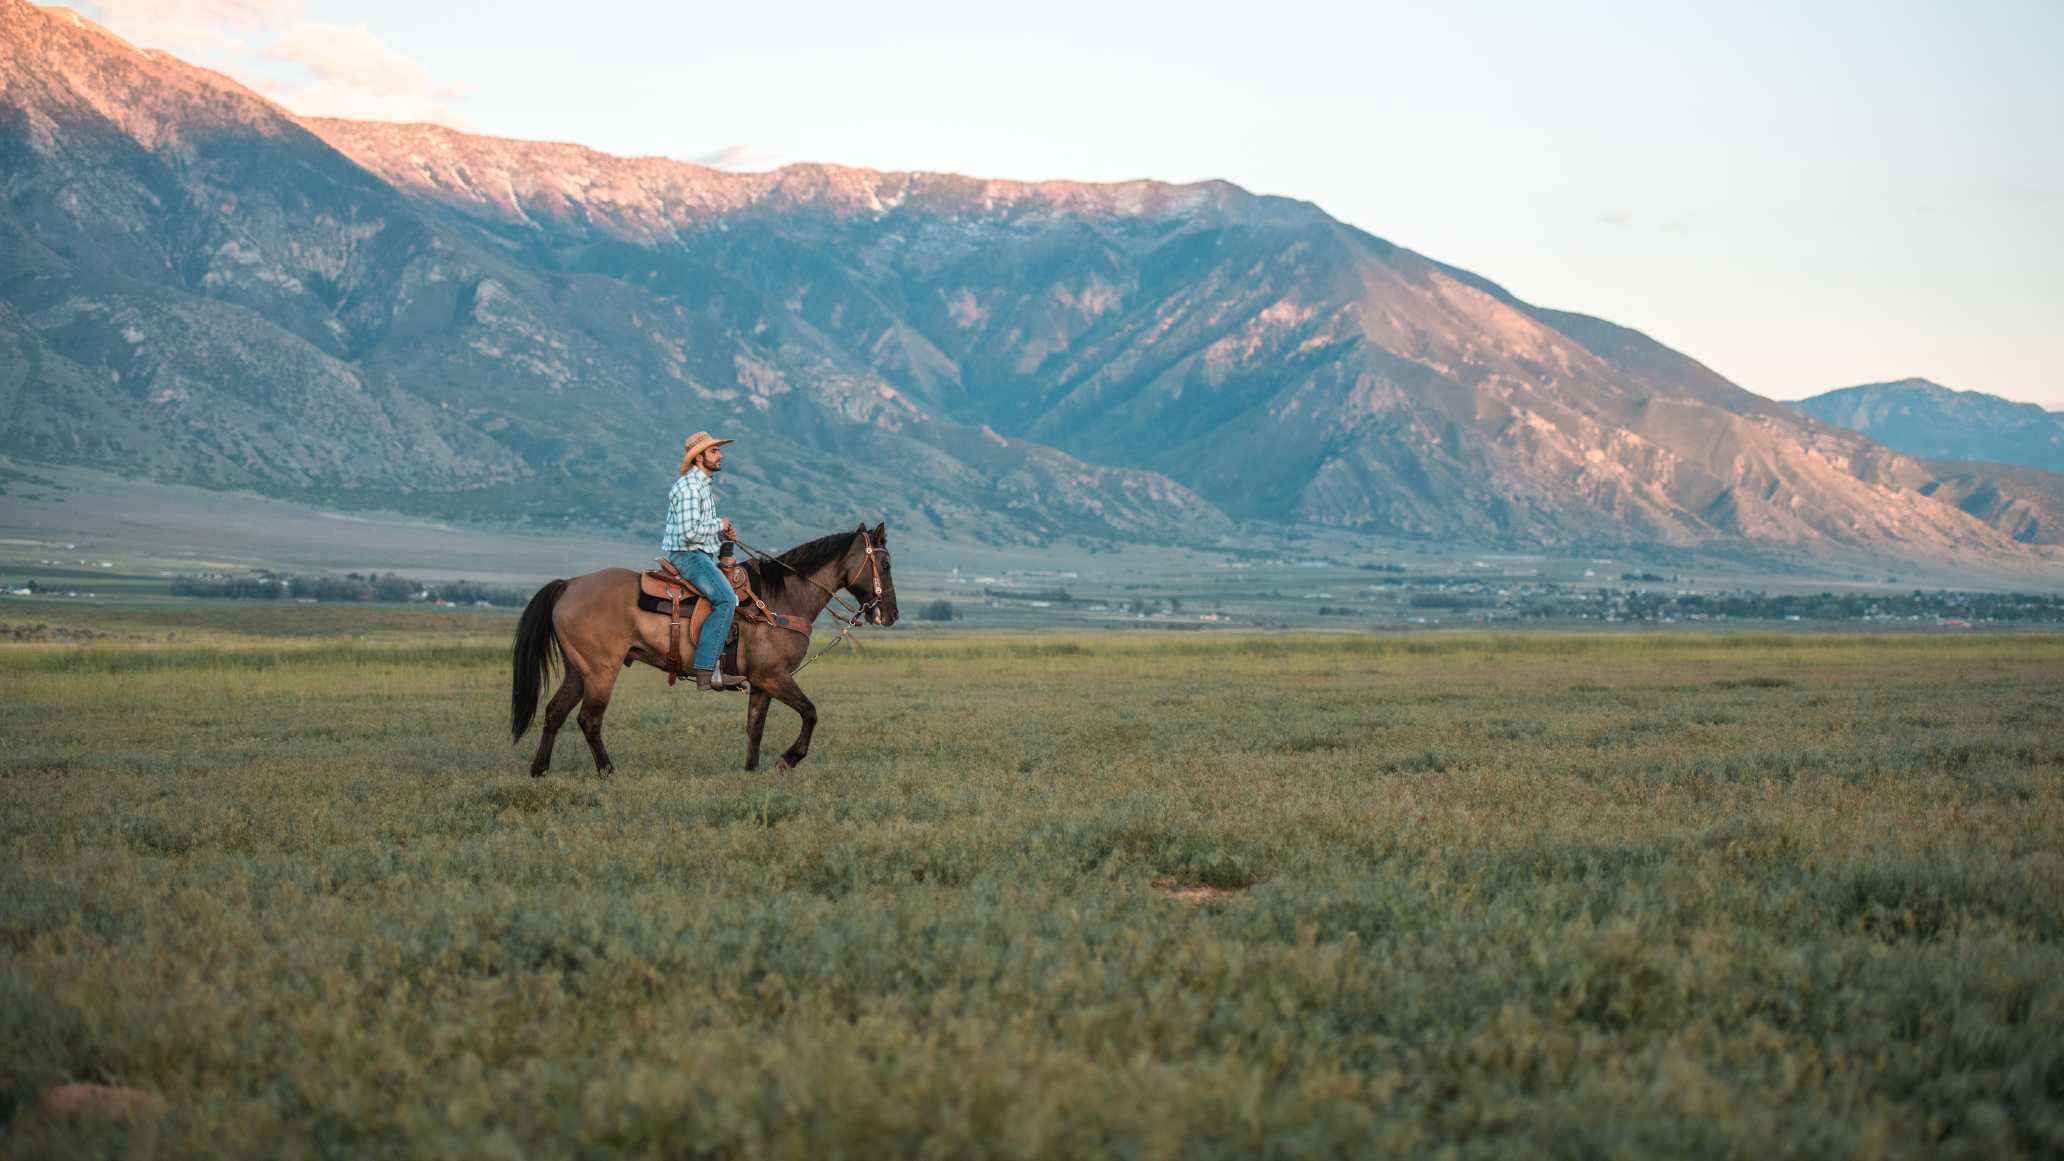 Ein Mann mit Cowboyhut reitet durch eine grüne Landschaft in den USA - eine der vielen Aktivitäten, denen man hier nachgehen kann